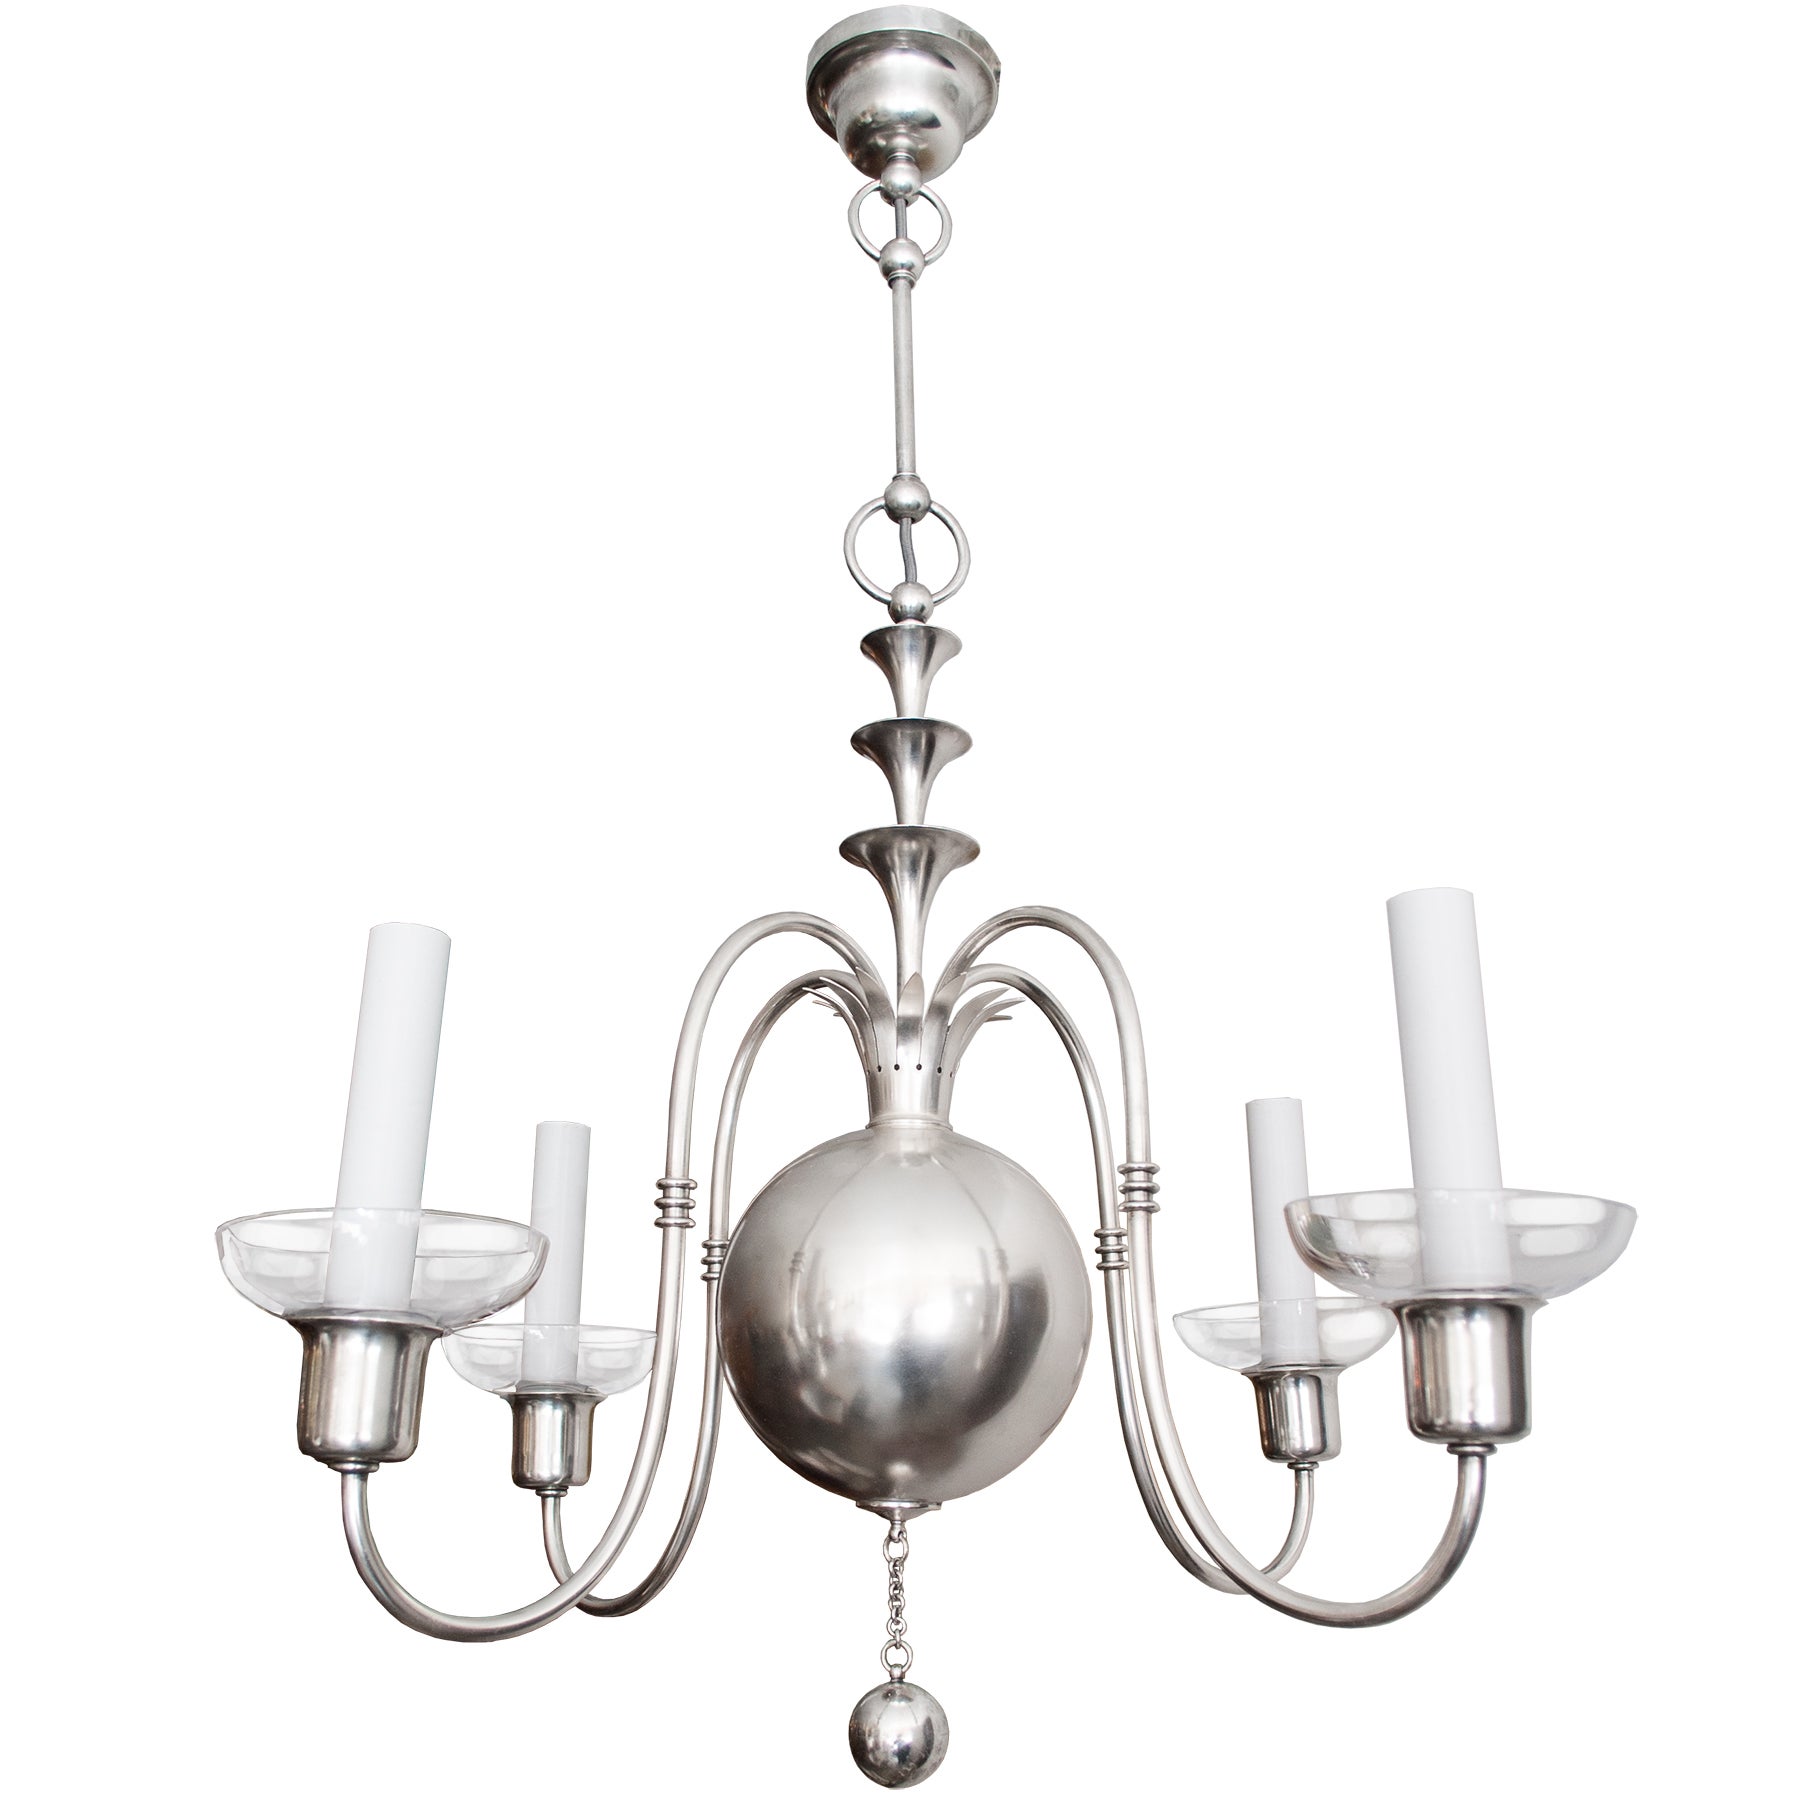 Swedish Art Deco silver chandelier Elis Bergh for C. G. Hallberg, Stockholm. 